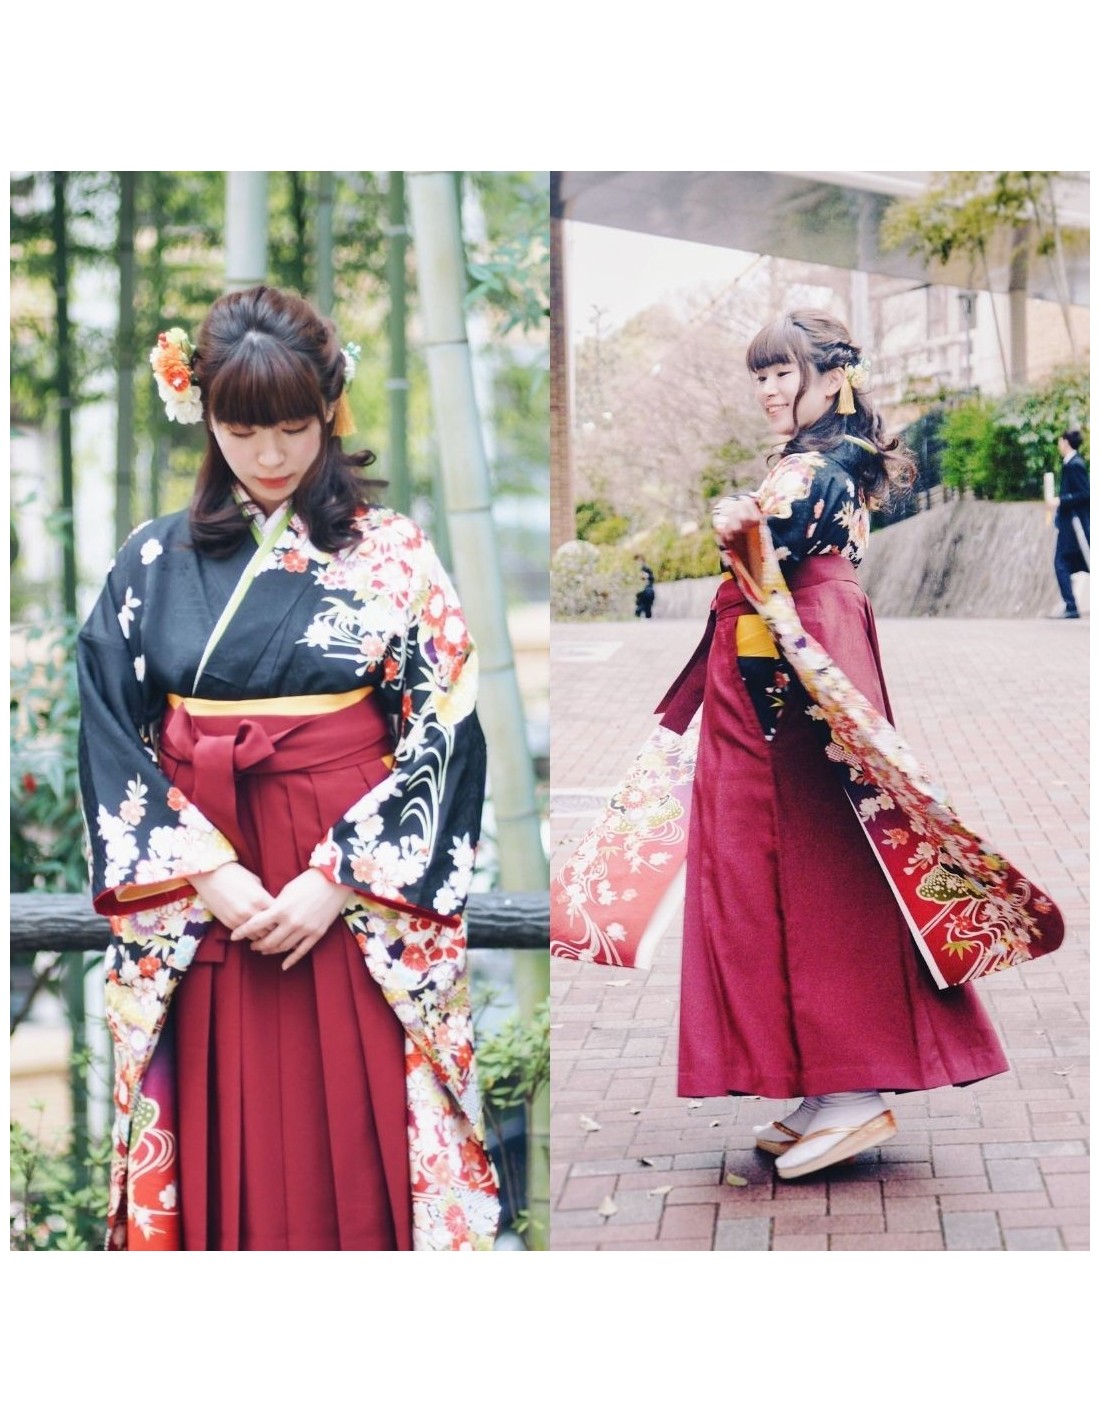 Hakama : Traditional Japanese Clothing | Japan City Tour